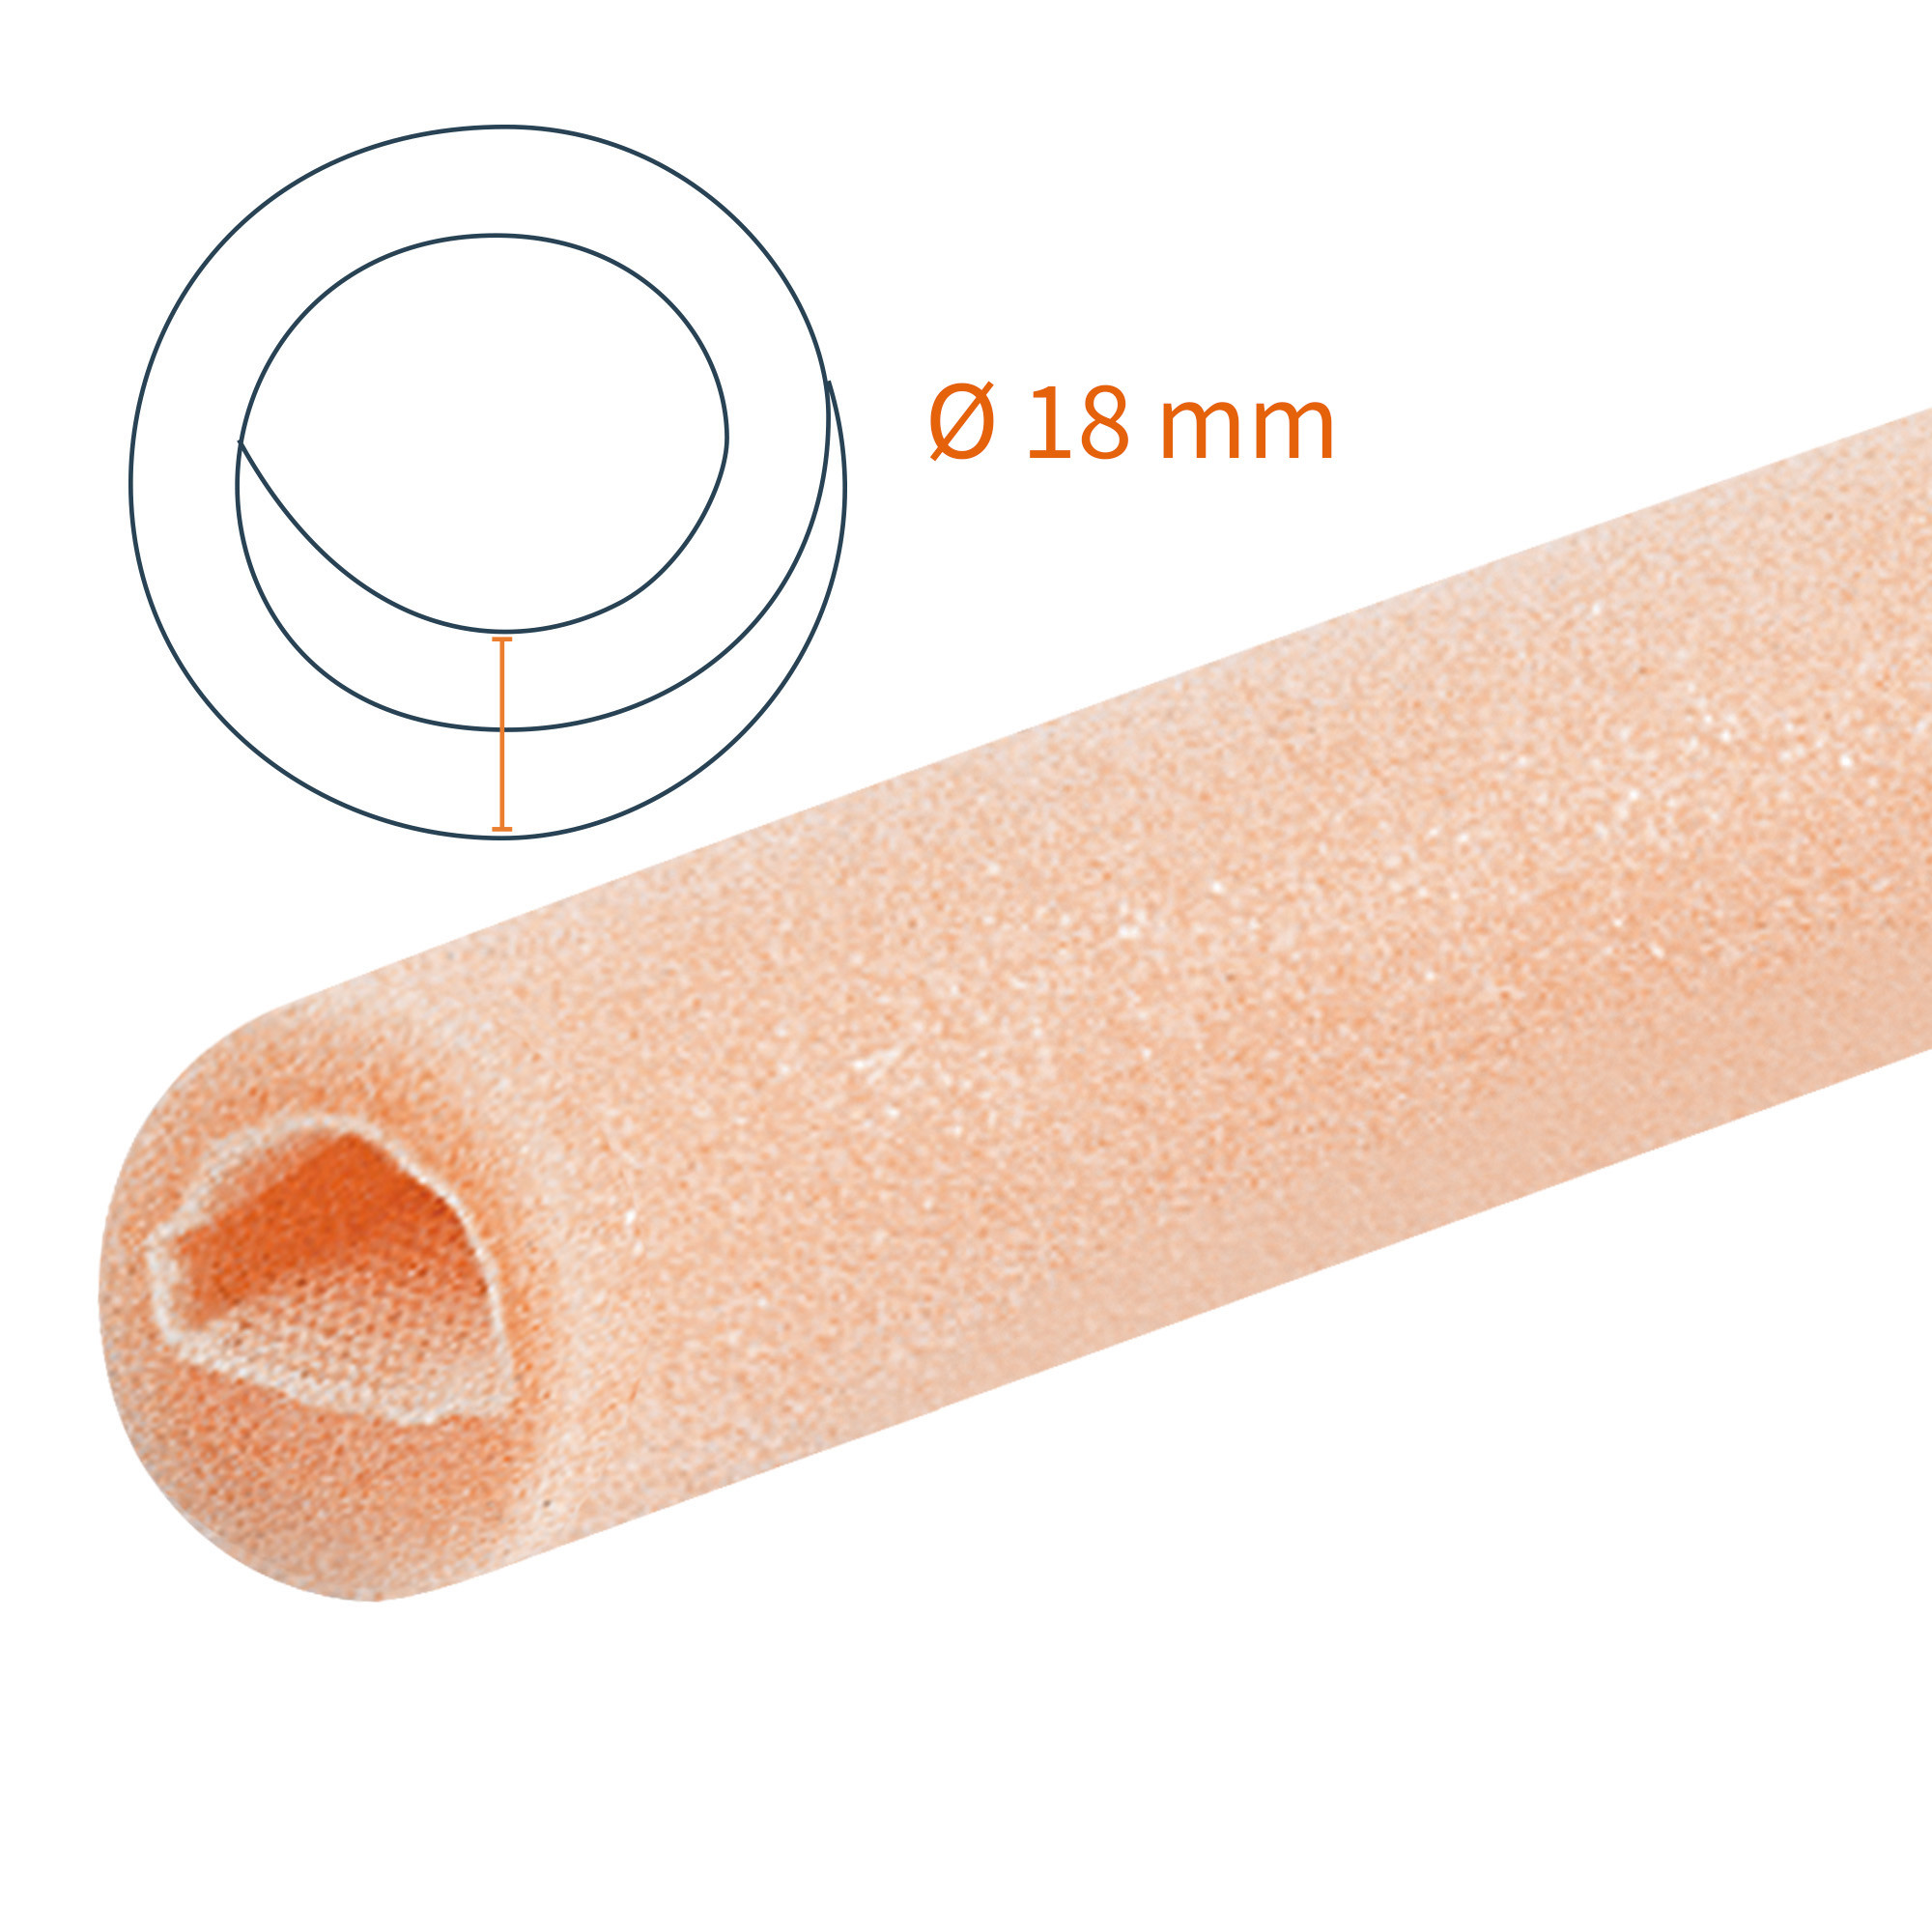 Protezione tubolare a doppio strato Tubifoam 18 mm BX 12 pz